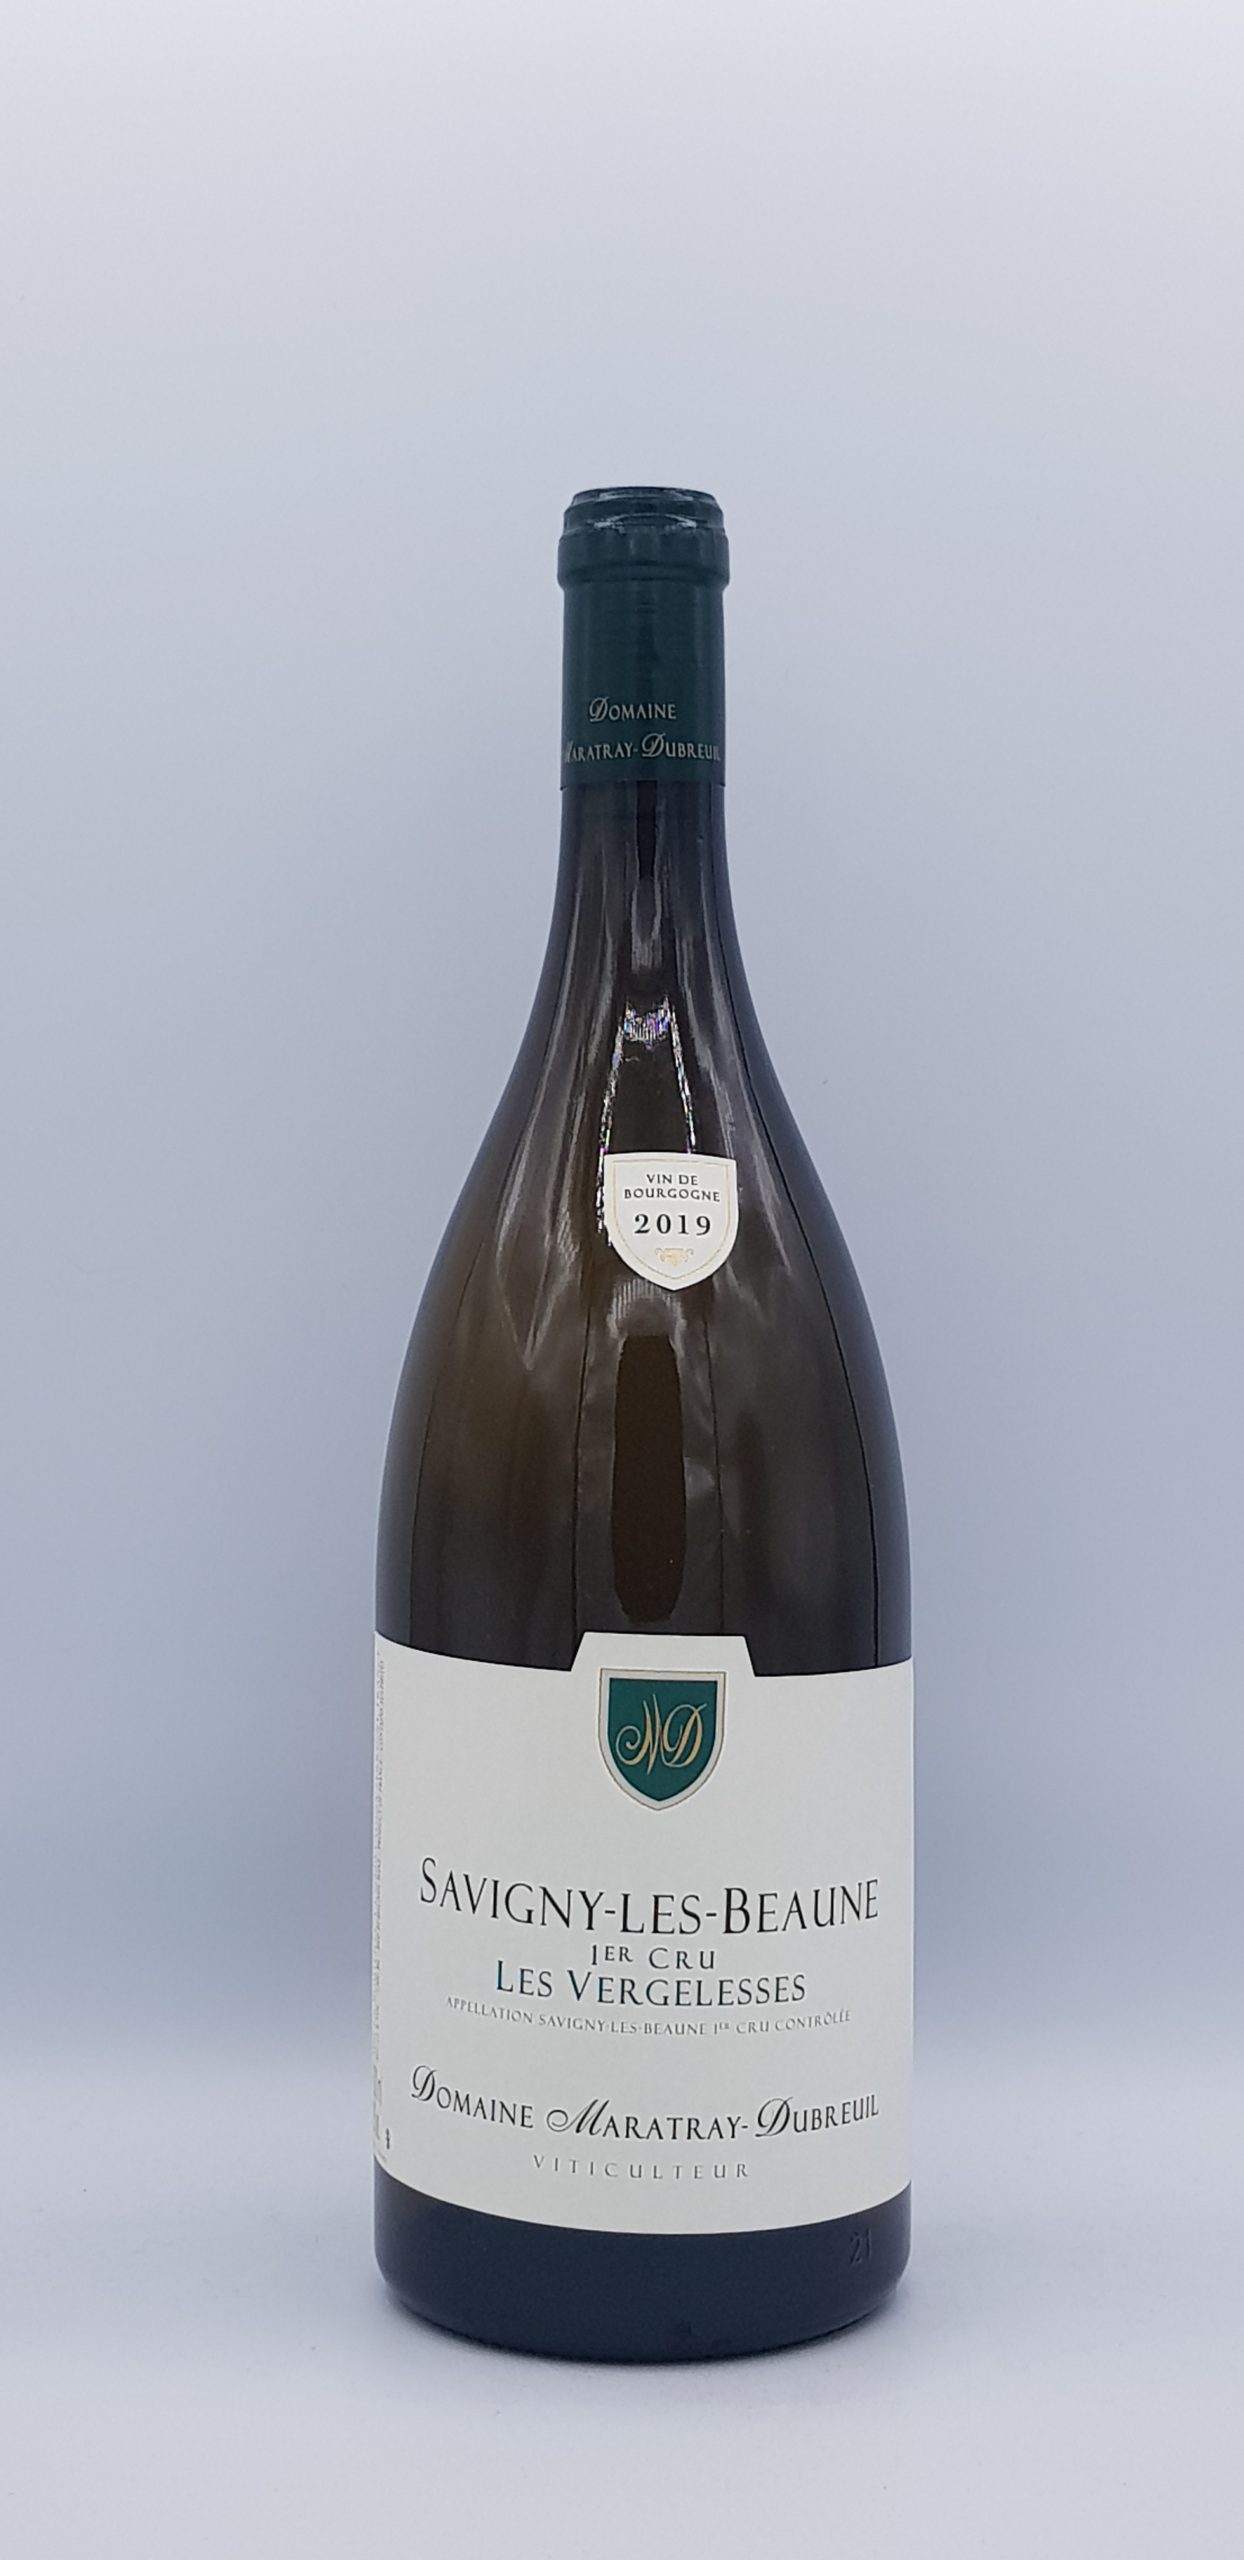 Magnum Pernand Vergelesses ‘Vignes Blanches” blanc 2019